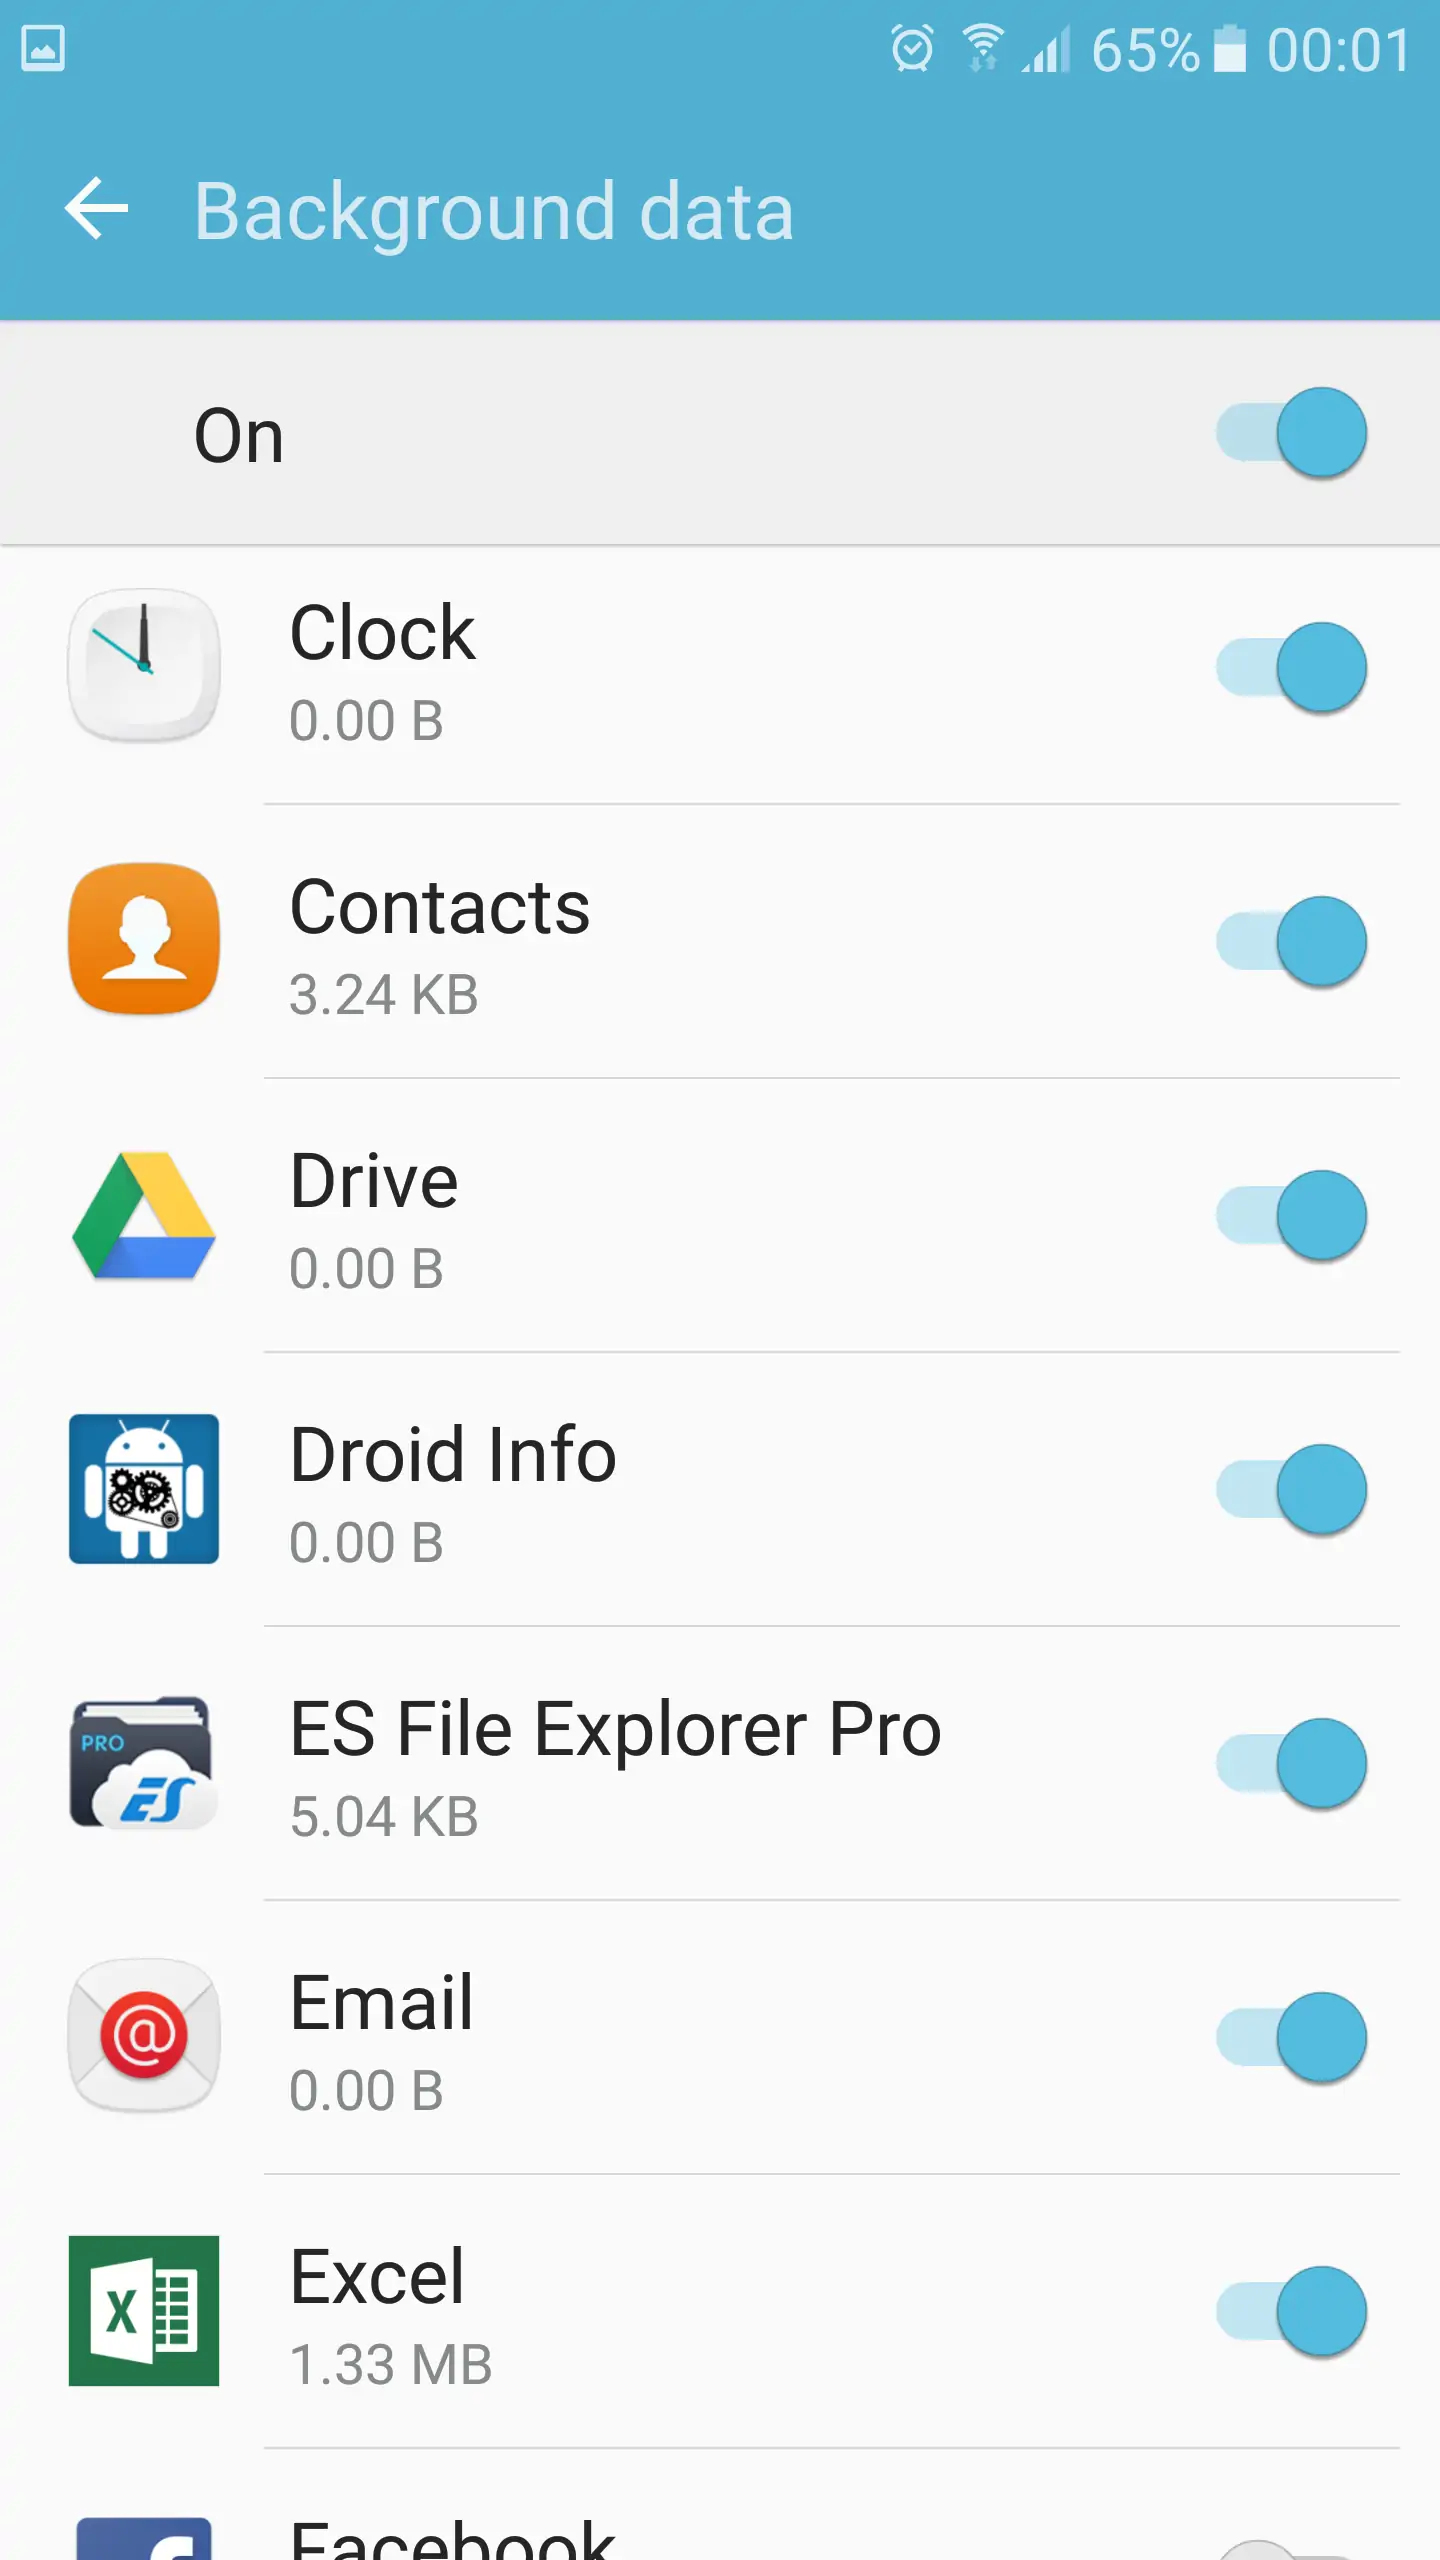 Samsung Galaxy S7 - Background data